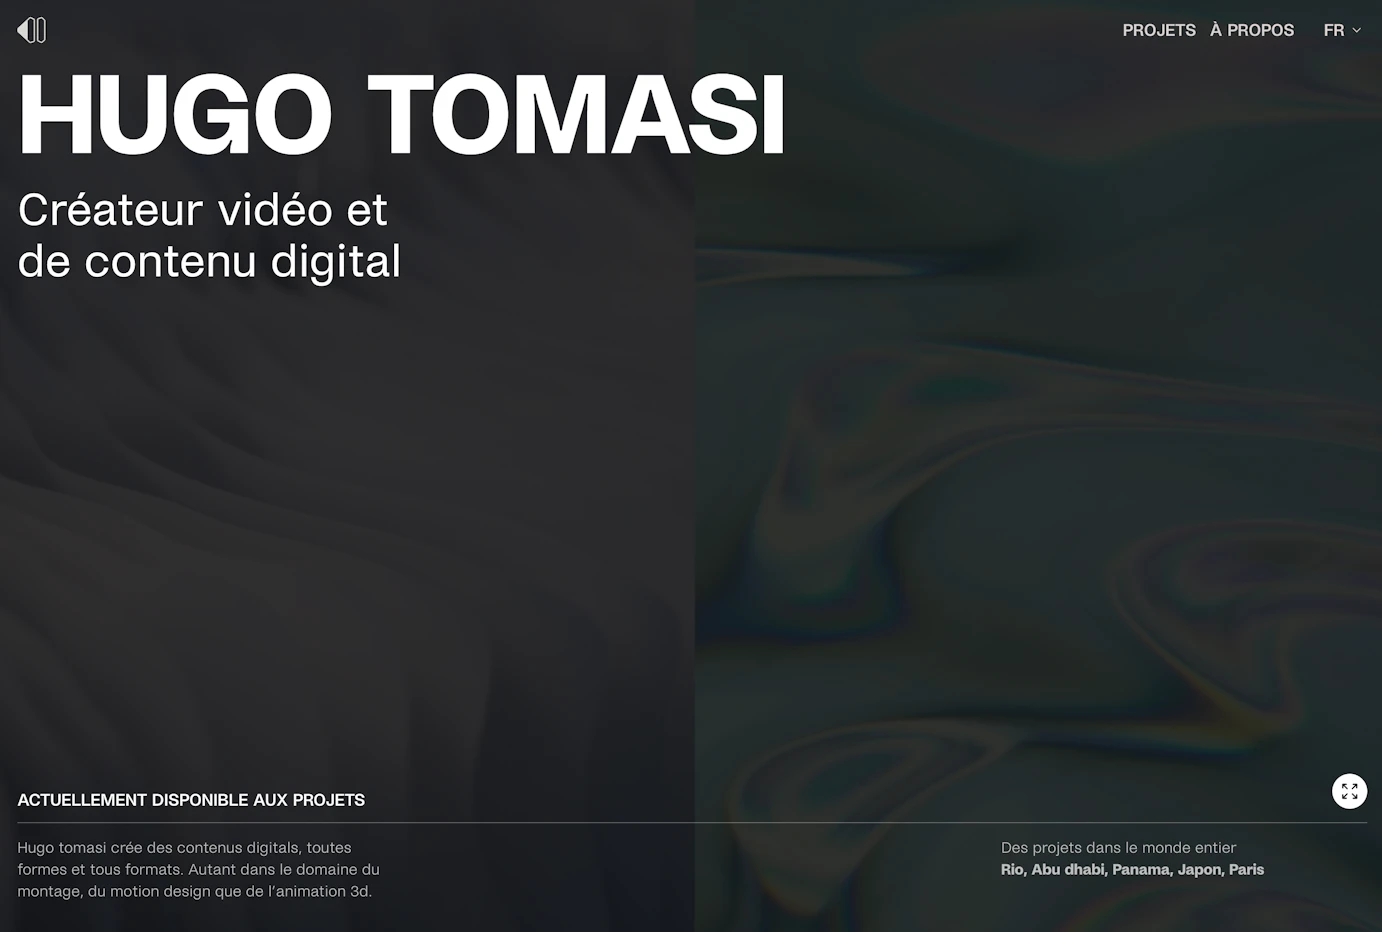 Image numéro 6 du projet hugo tomasi  crée par Timothé Joubert